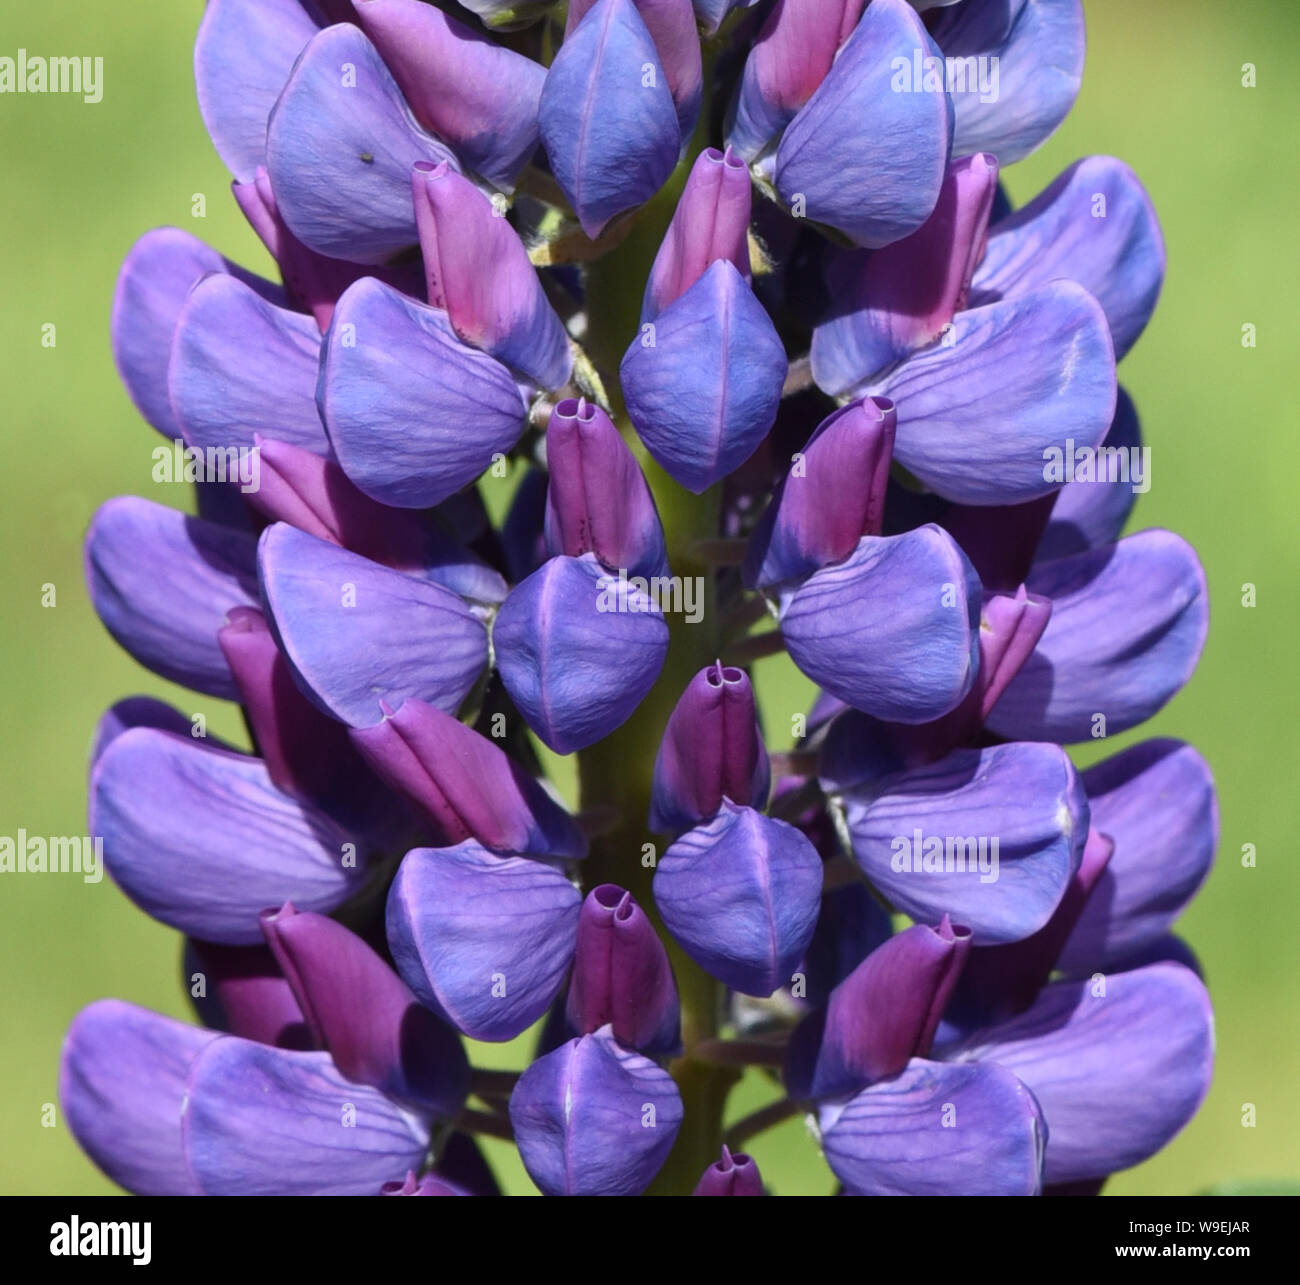 Lupine, Lupinus angustifolius, diese Blume kommt haeufig wild auf  Wiesen und im Wald vor und hat schoene blaue Blueten. Sie gehoert zu de Heilpflanze Stock Photo